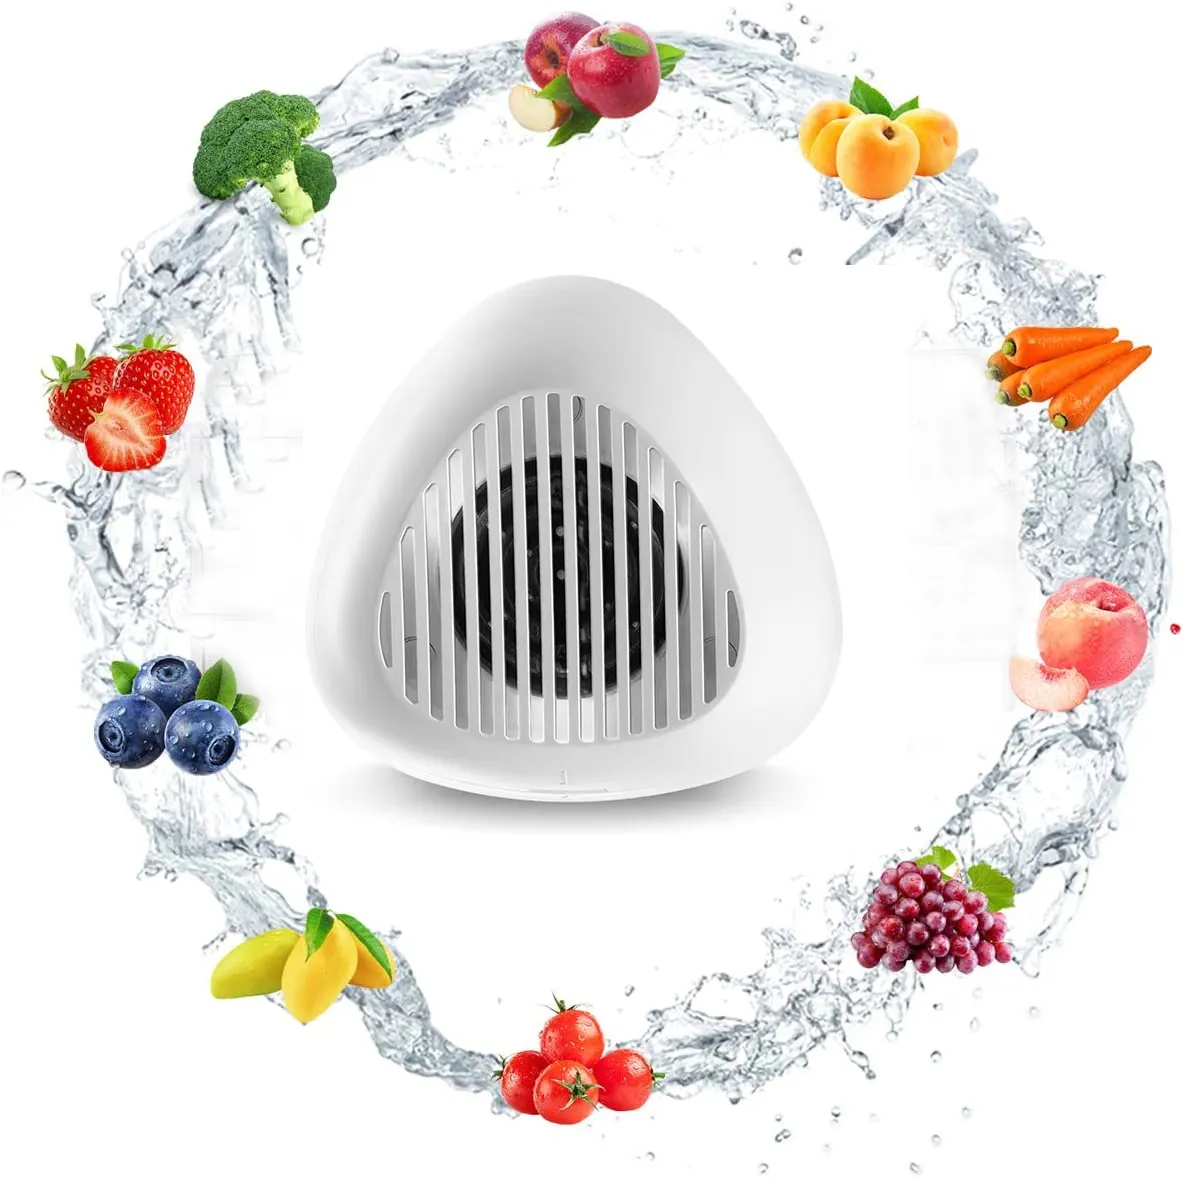 Temizlik için OH-ion arıtma teknolojisi ile meyve ve sebze yıkama makinesi meyve temizleyici cihazı meyve temizleyici